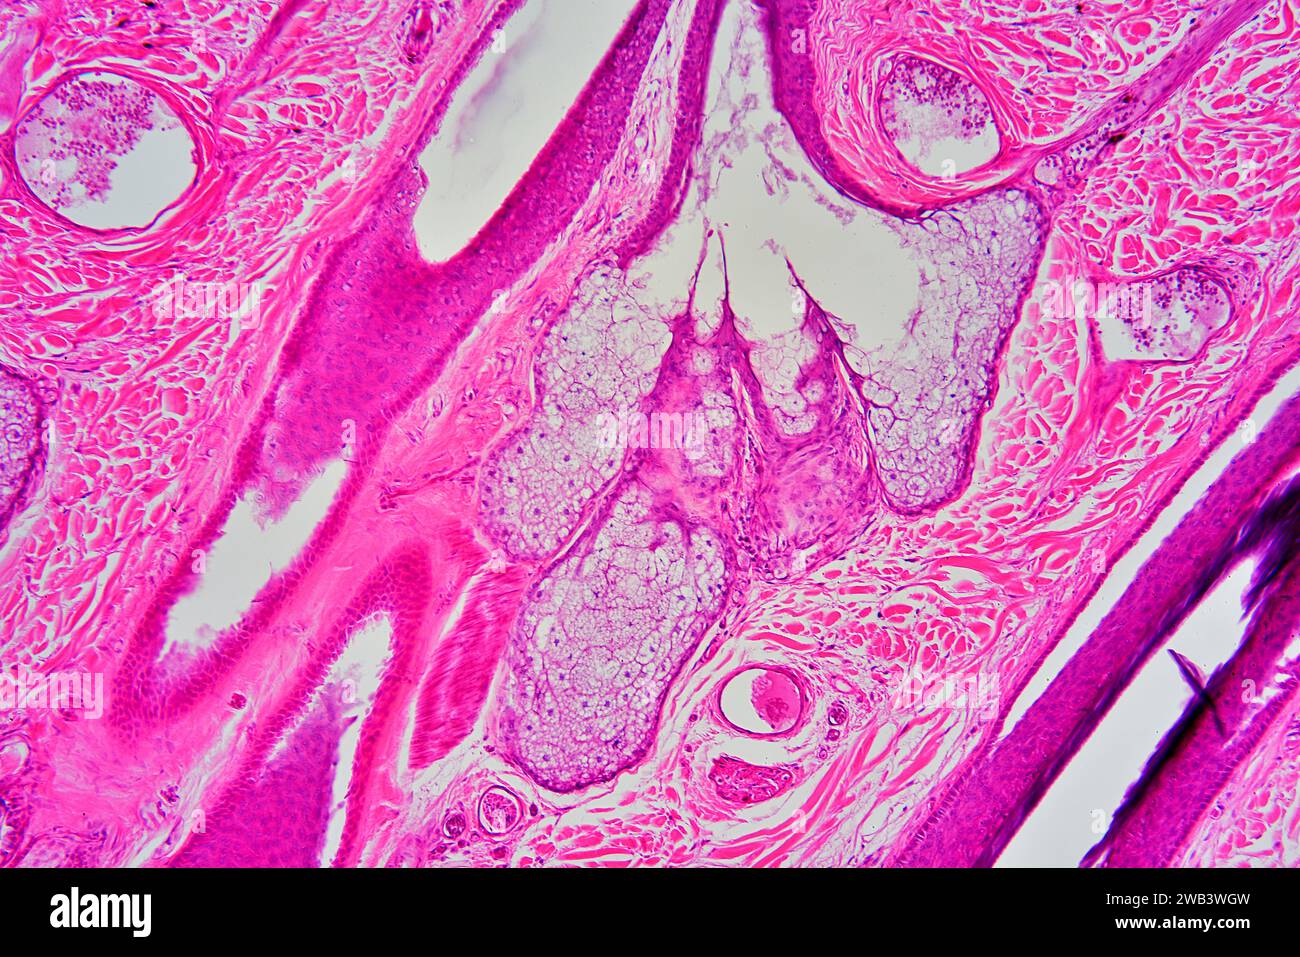 Menschliche Haut mit Talgdrüse, Blutgefäßen und Haarfollikel. X 75 bei 10 cm Breite. Stockfoto